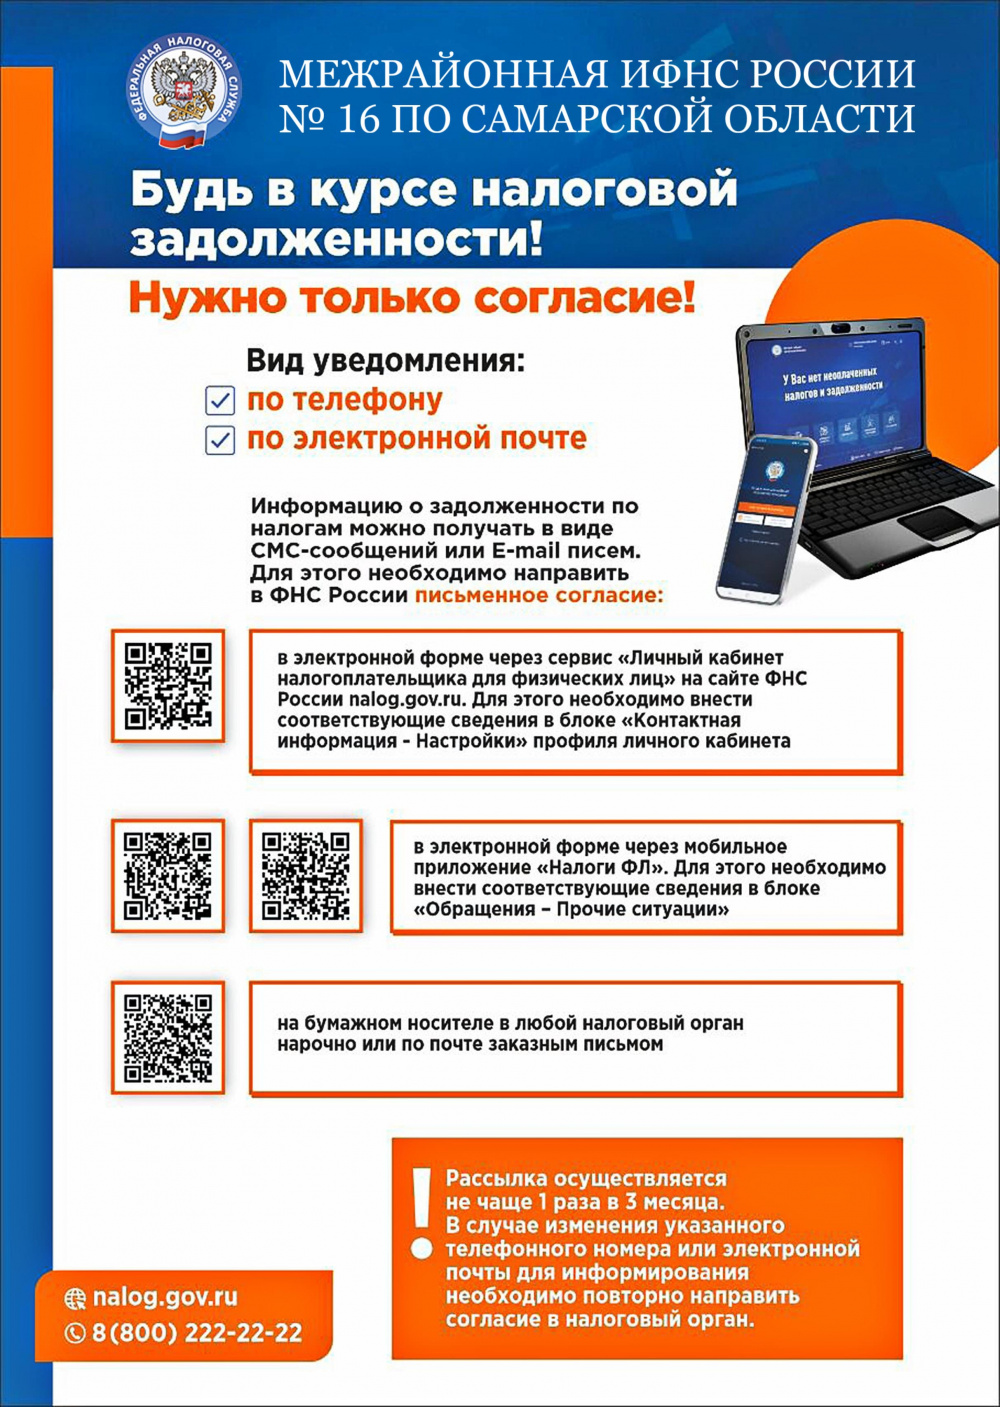 Уважаемые налогоплательщики! Межрайонная ИФНС России № 16 по Самарской области сообщает, что узнать о налоговой задолженности можно по СМС или E-mail